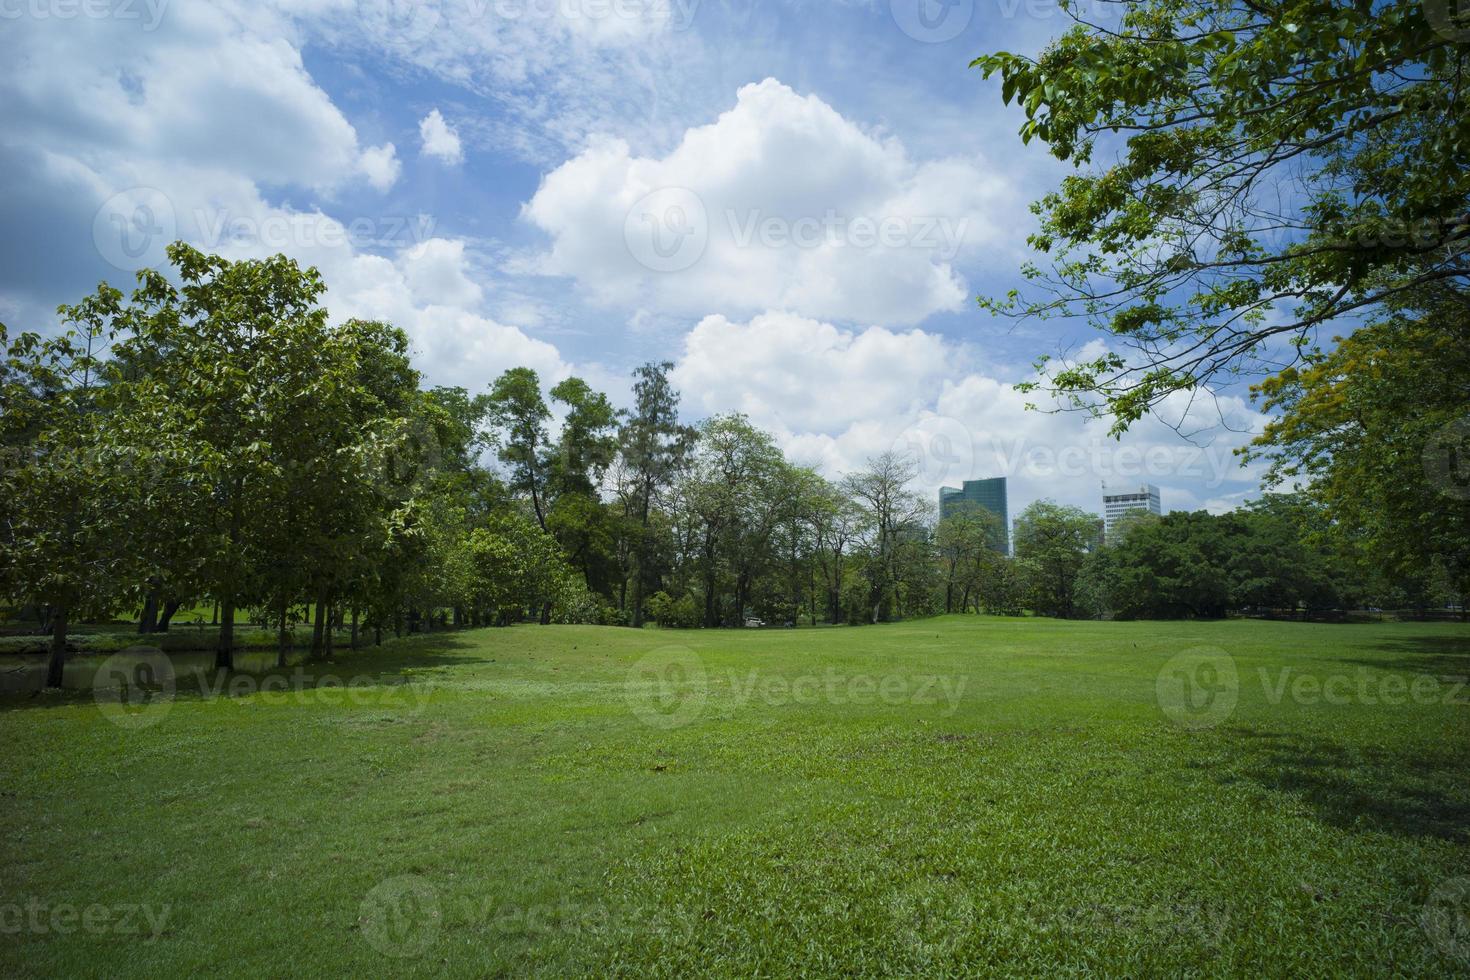 mooi groen gras bij park foto